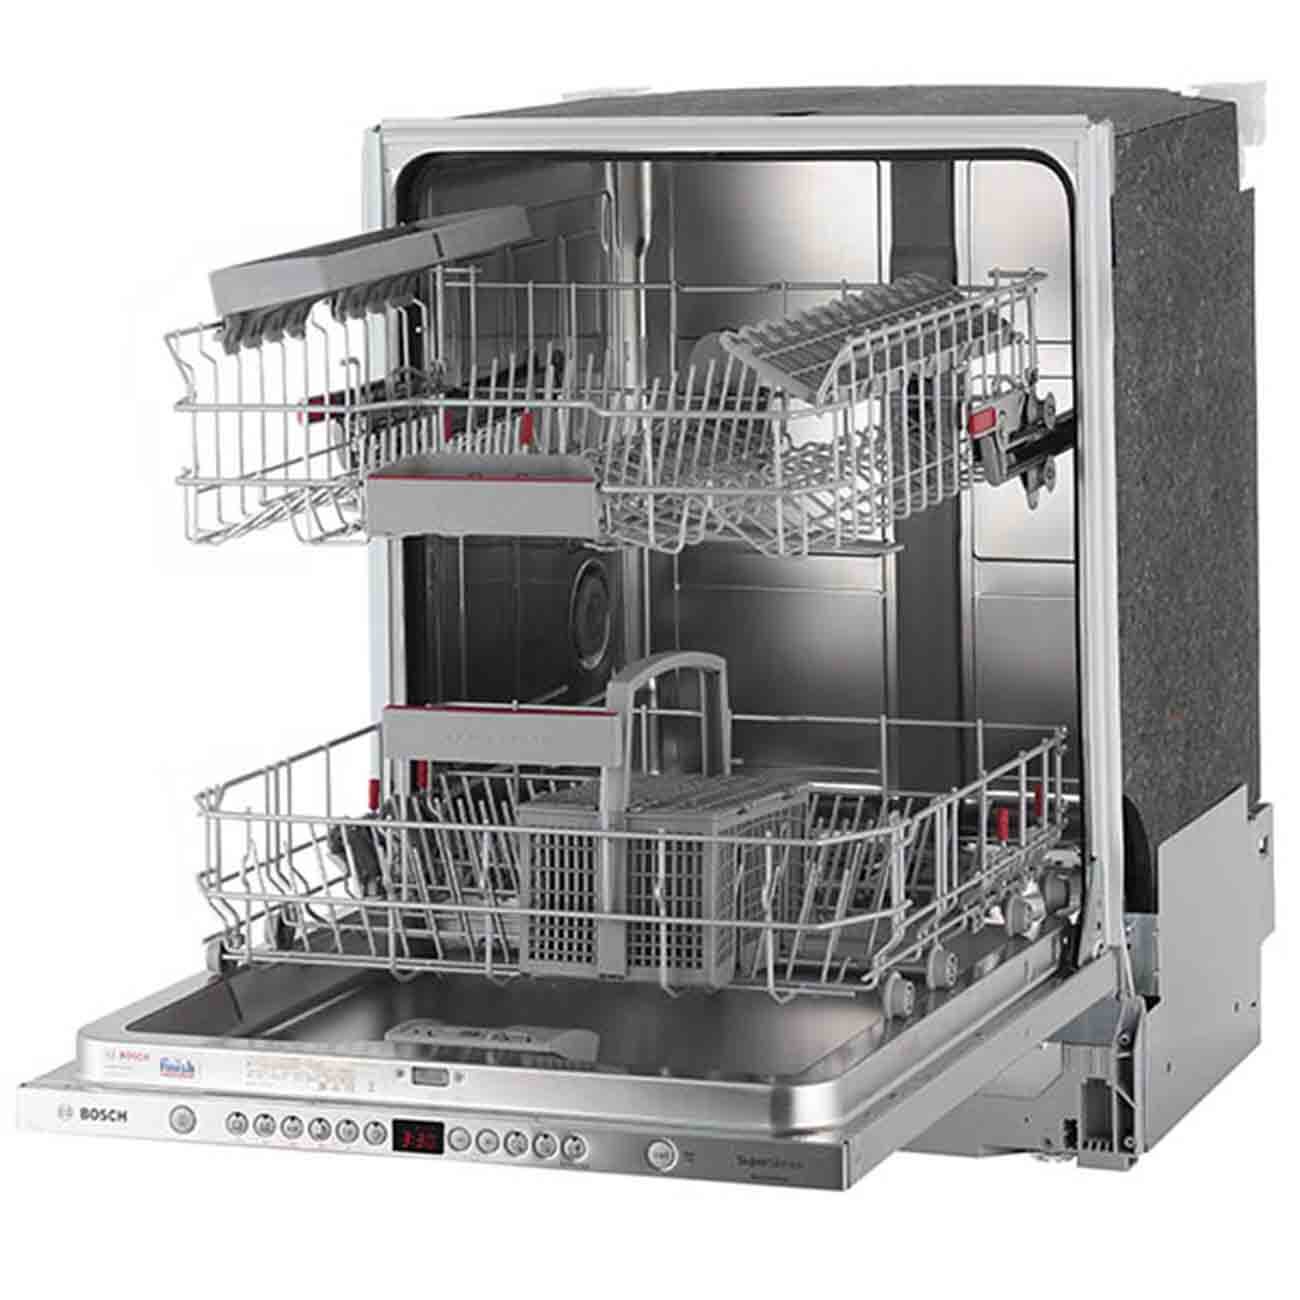 Купить встроенную посудомоечную машину bosch 60 см. Посудомоечная машина Bosch smv46ix03r. Посудомоечная машина встраиваемая 60 бош. Bosch serie посудомоечная машина 60 см встраиваемая. Посудомоечная машина Bosch serie 4.